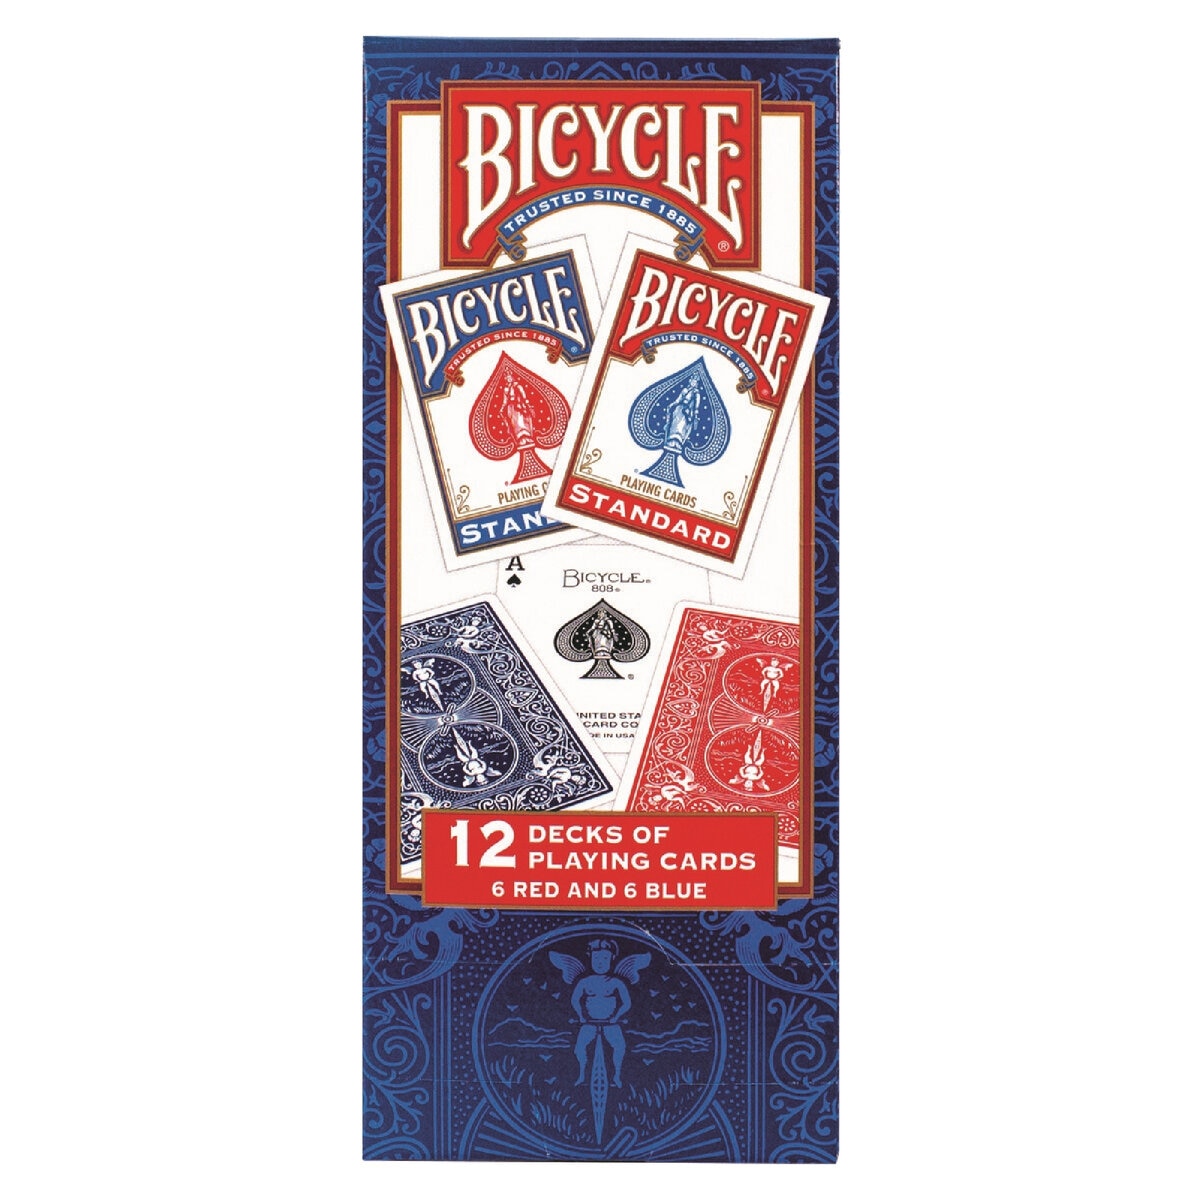 BICYCLE プレイングカード 48デックセット (12デック x 4箱) | Costco 